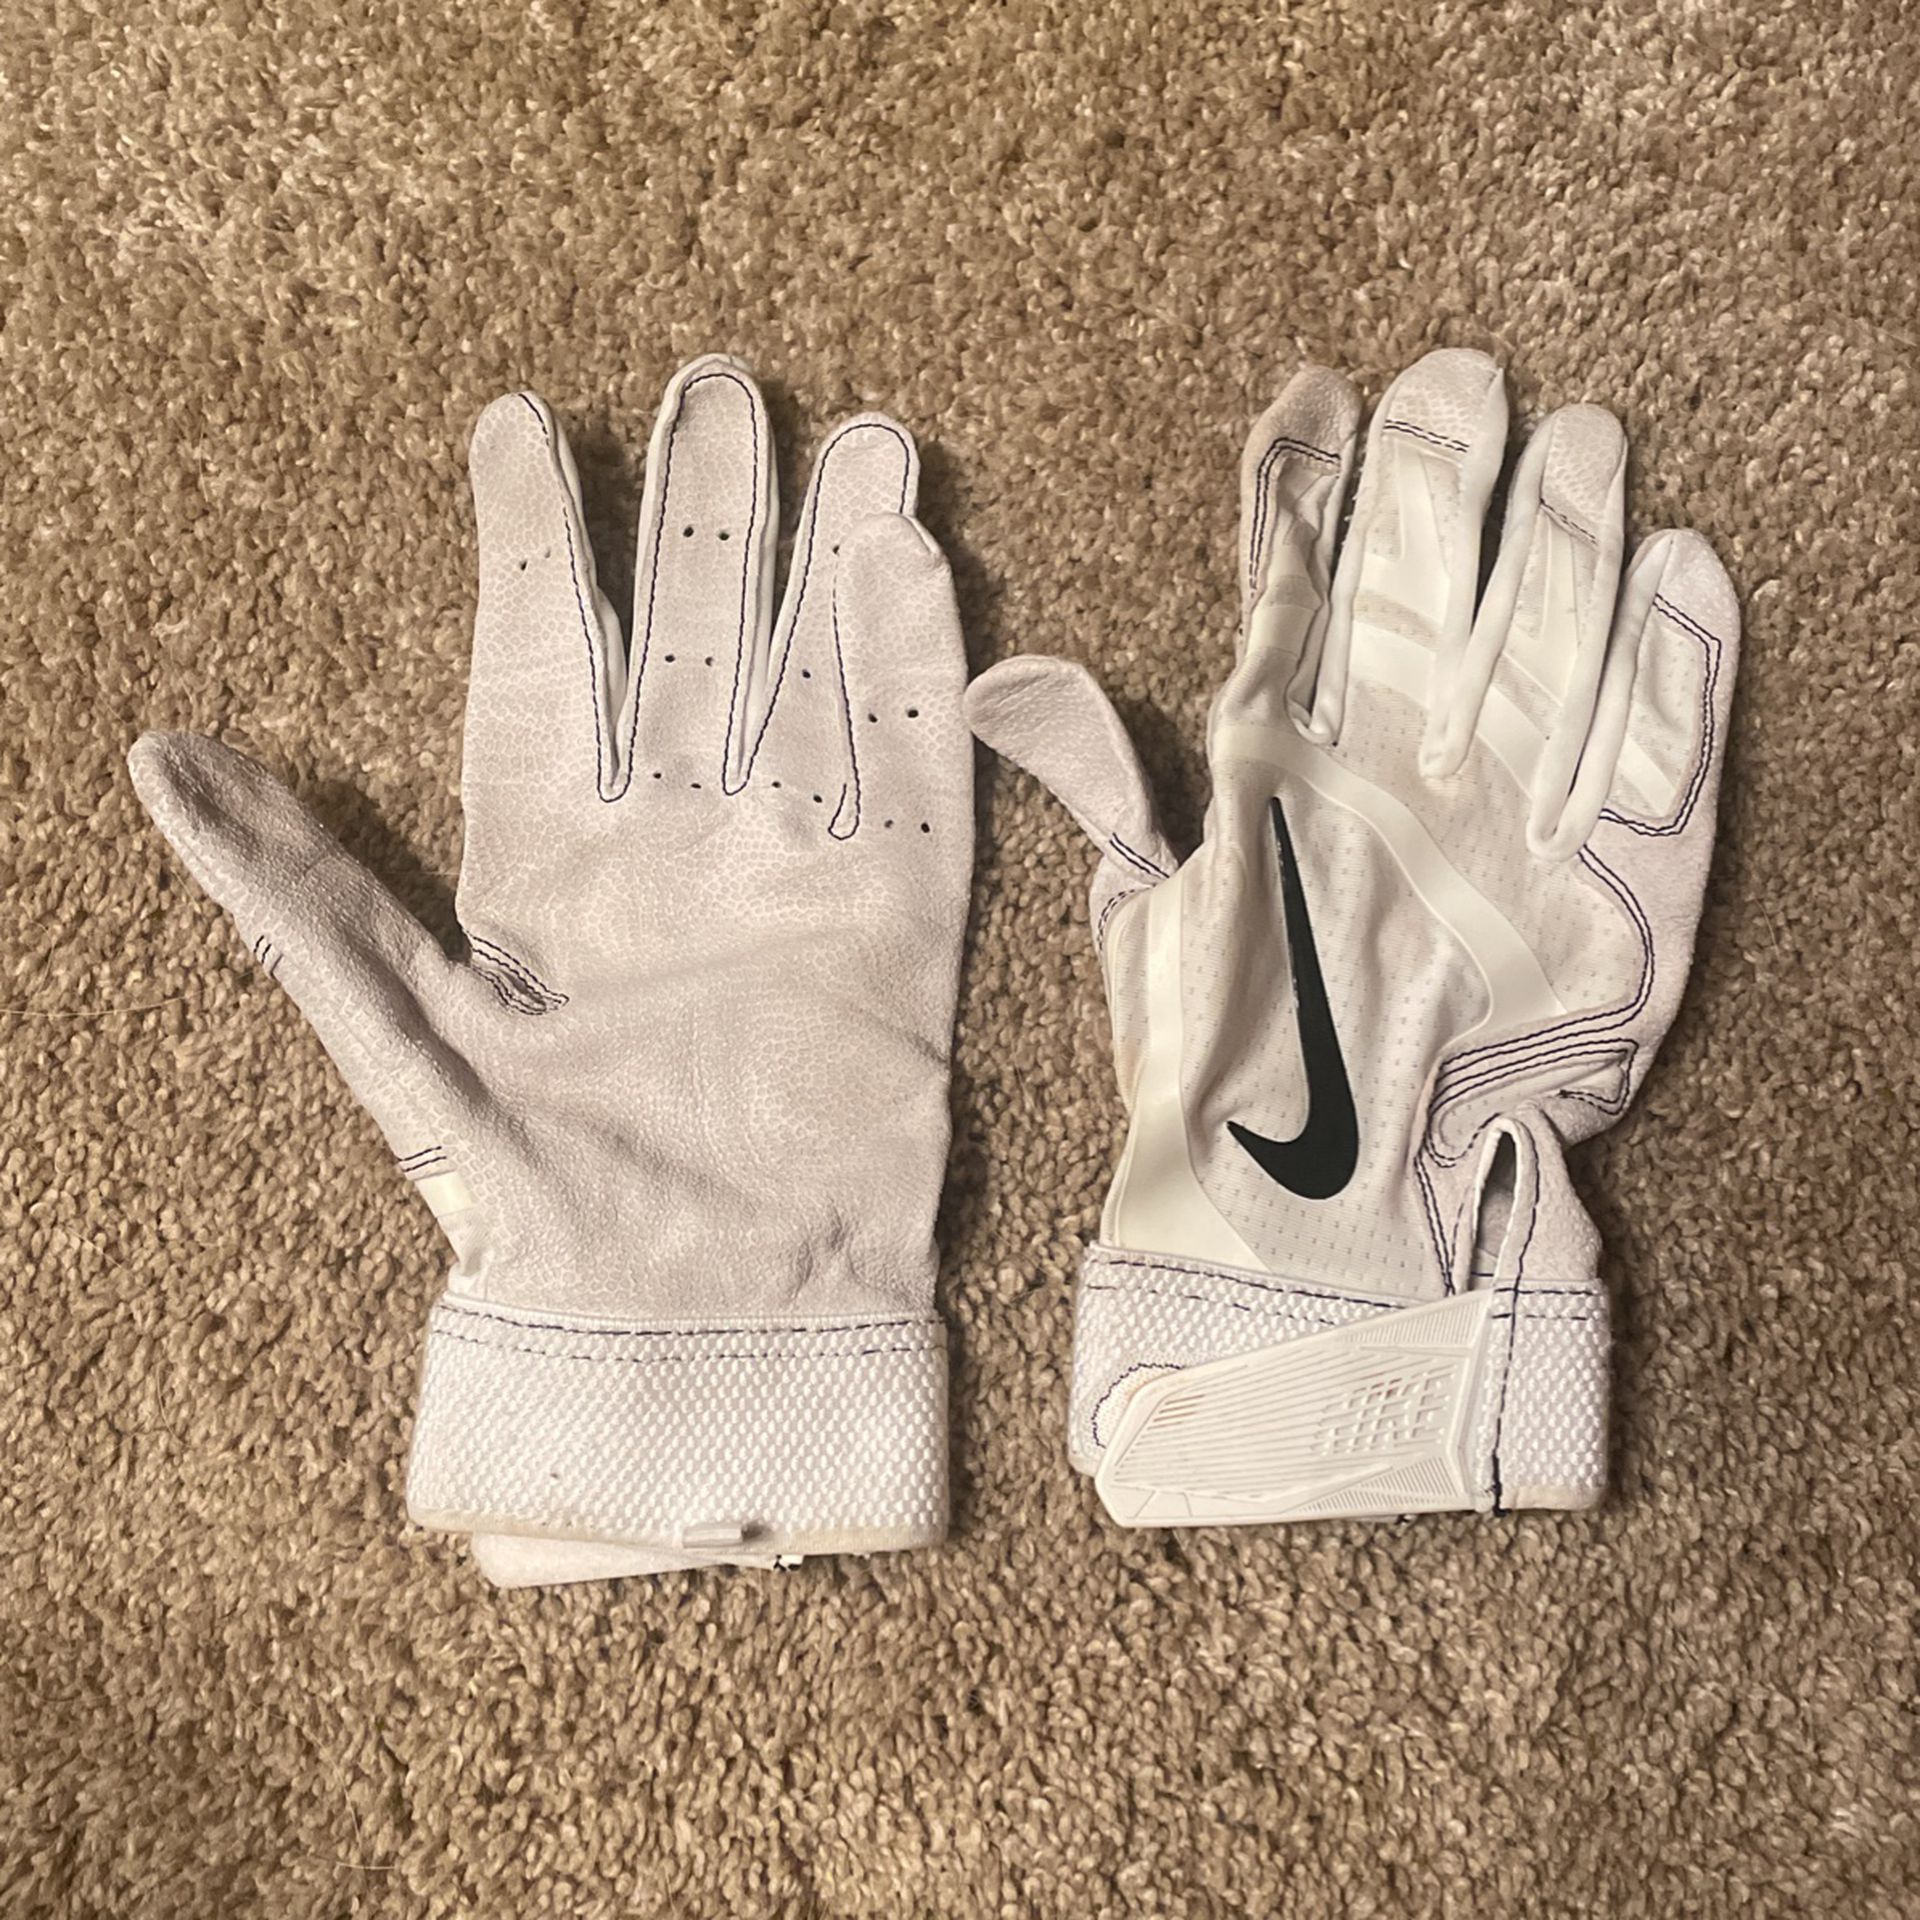 Nike Men’s Batting Gloves